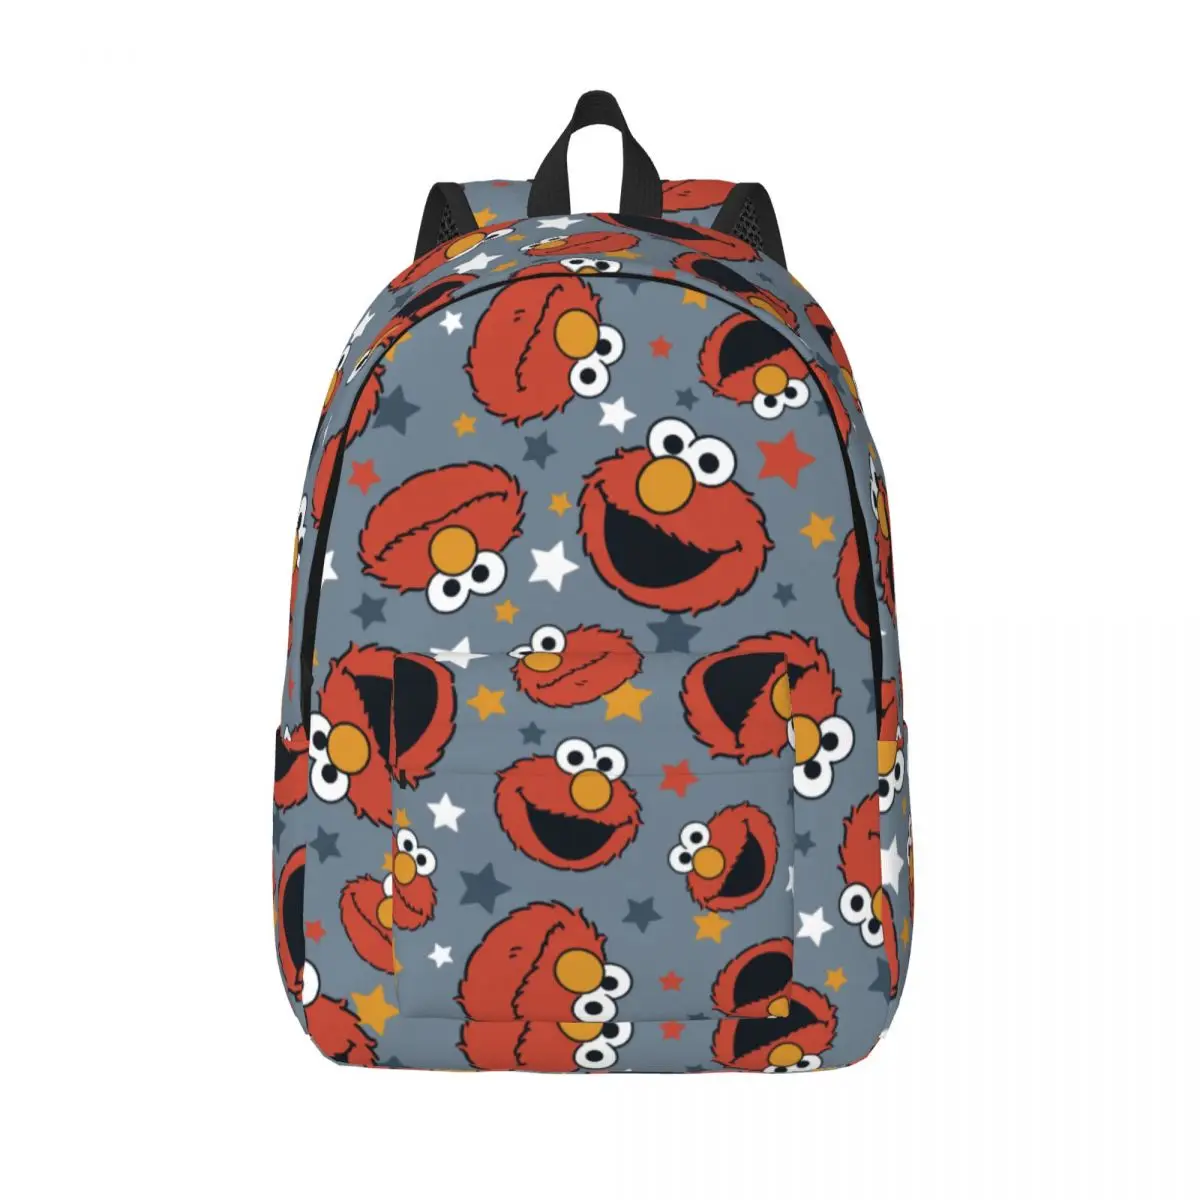 

Elmos Rules Star Cookies Monsters Backpack for Boy Girl Kids Student School Bookbag Cartoon Daypack Kindergarten Primary Bag